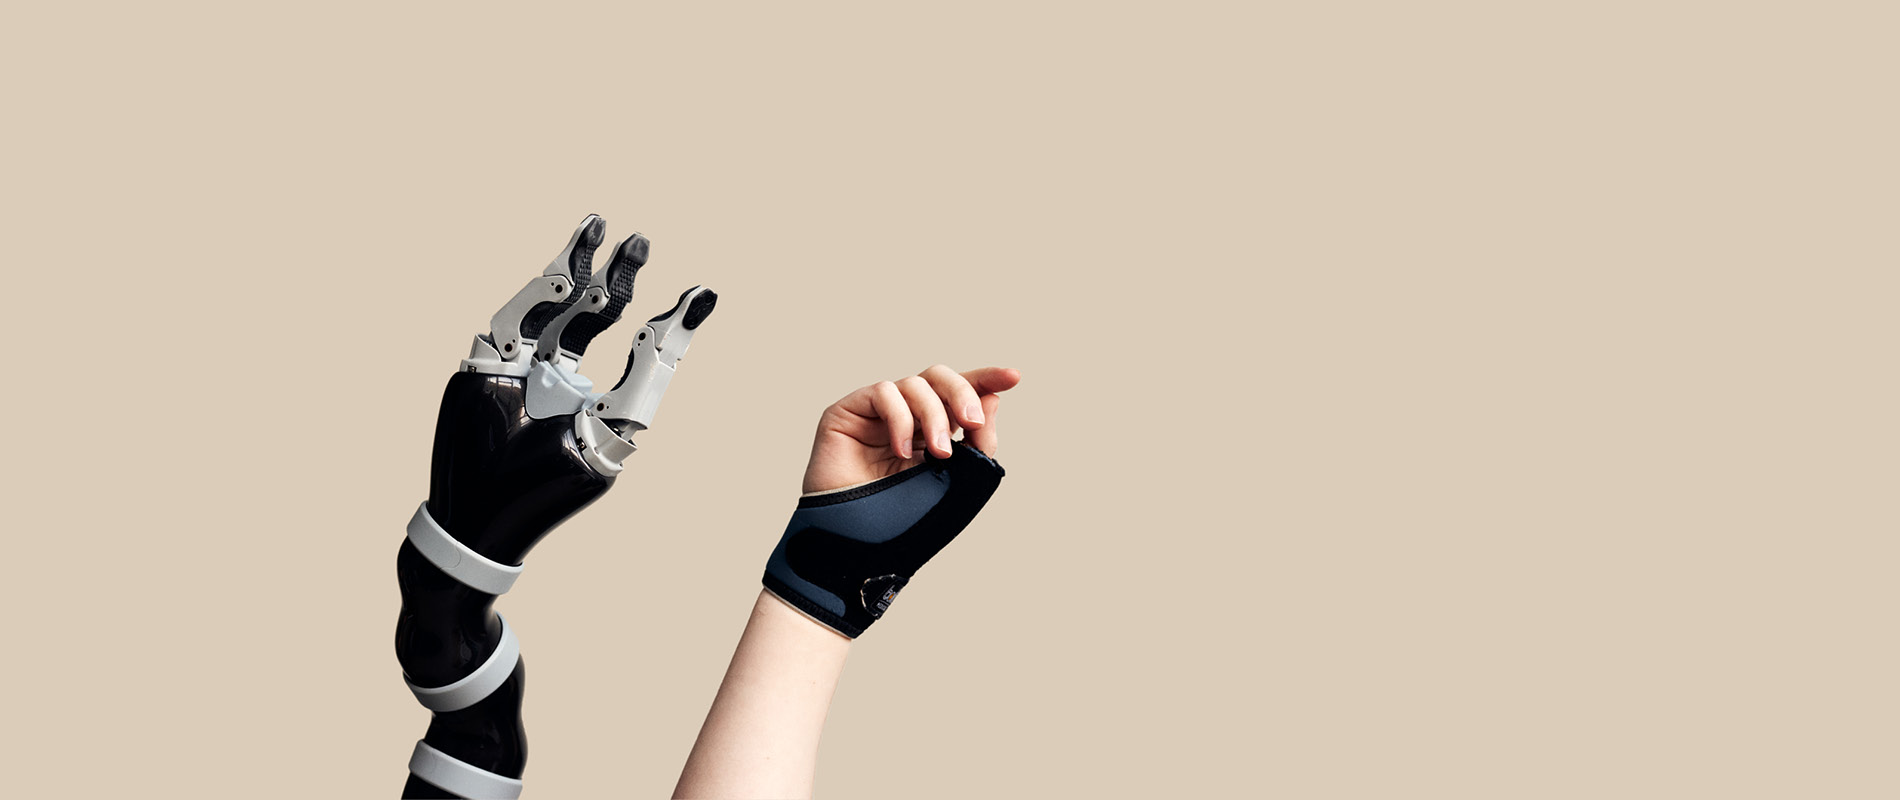 Eine Roboterhand wird neben einer menschlichen Hand vor einem sandfarbenen Hintergrund in die Luft gestreckt